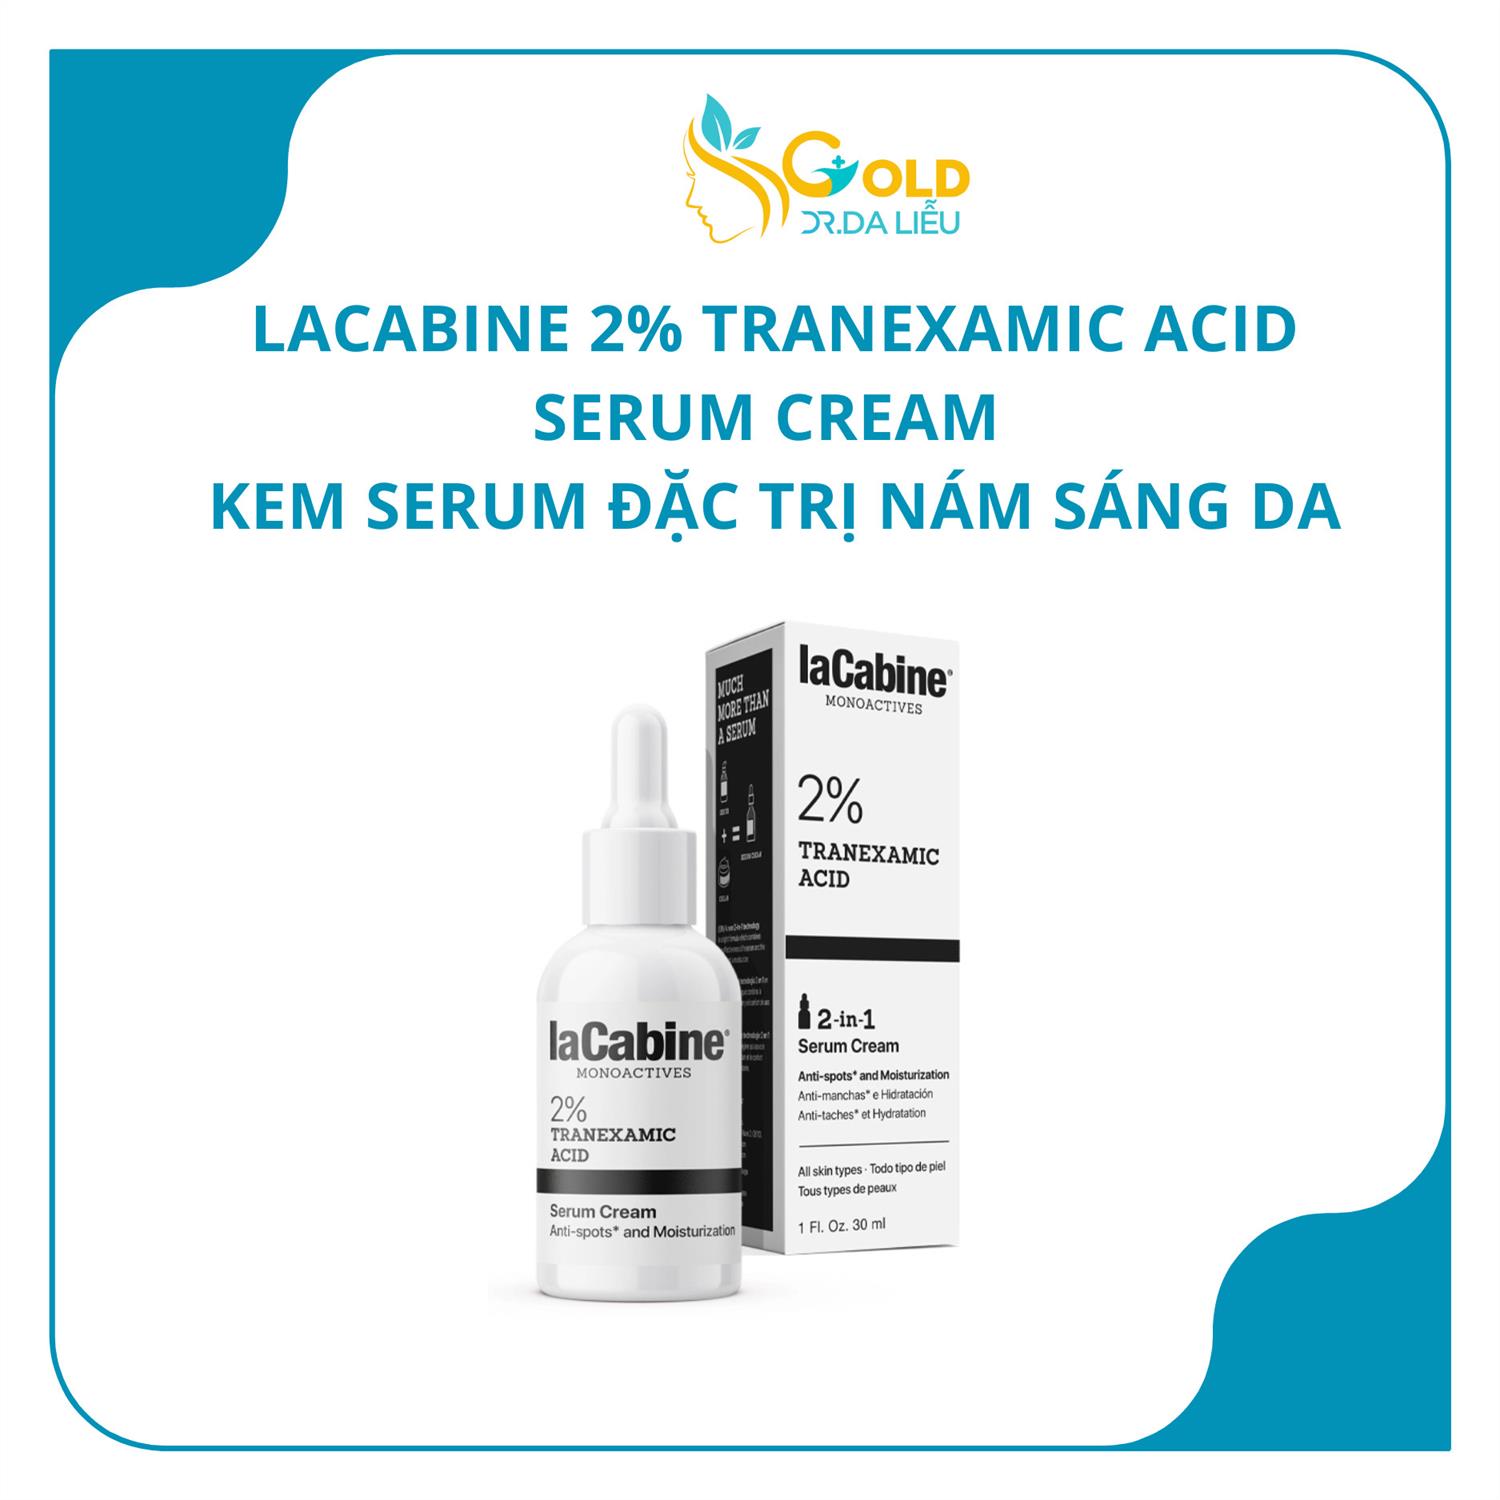 LACABINE 2% TRANEXAMIC ACID SERUM CREAM